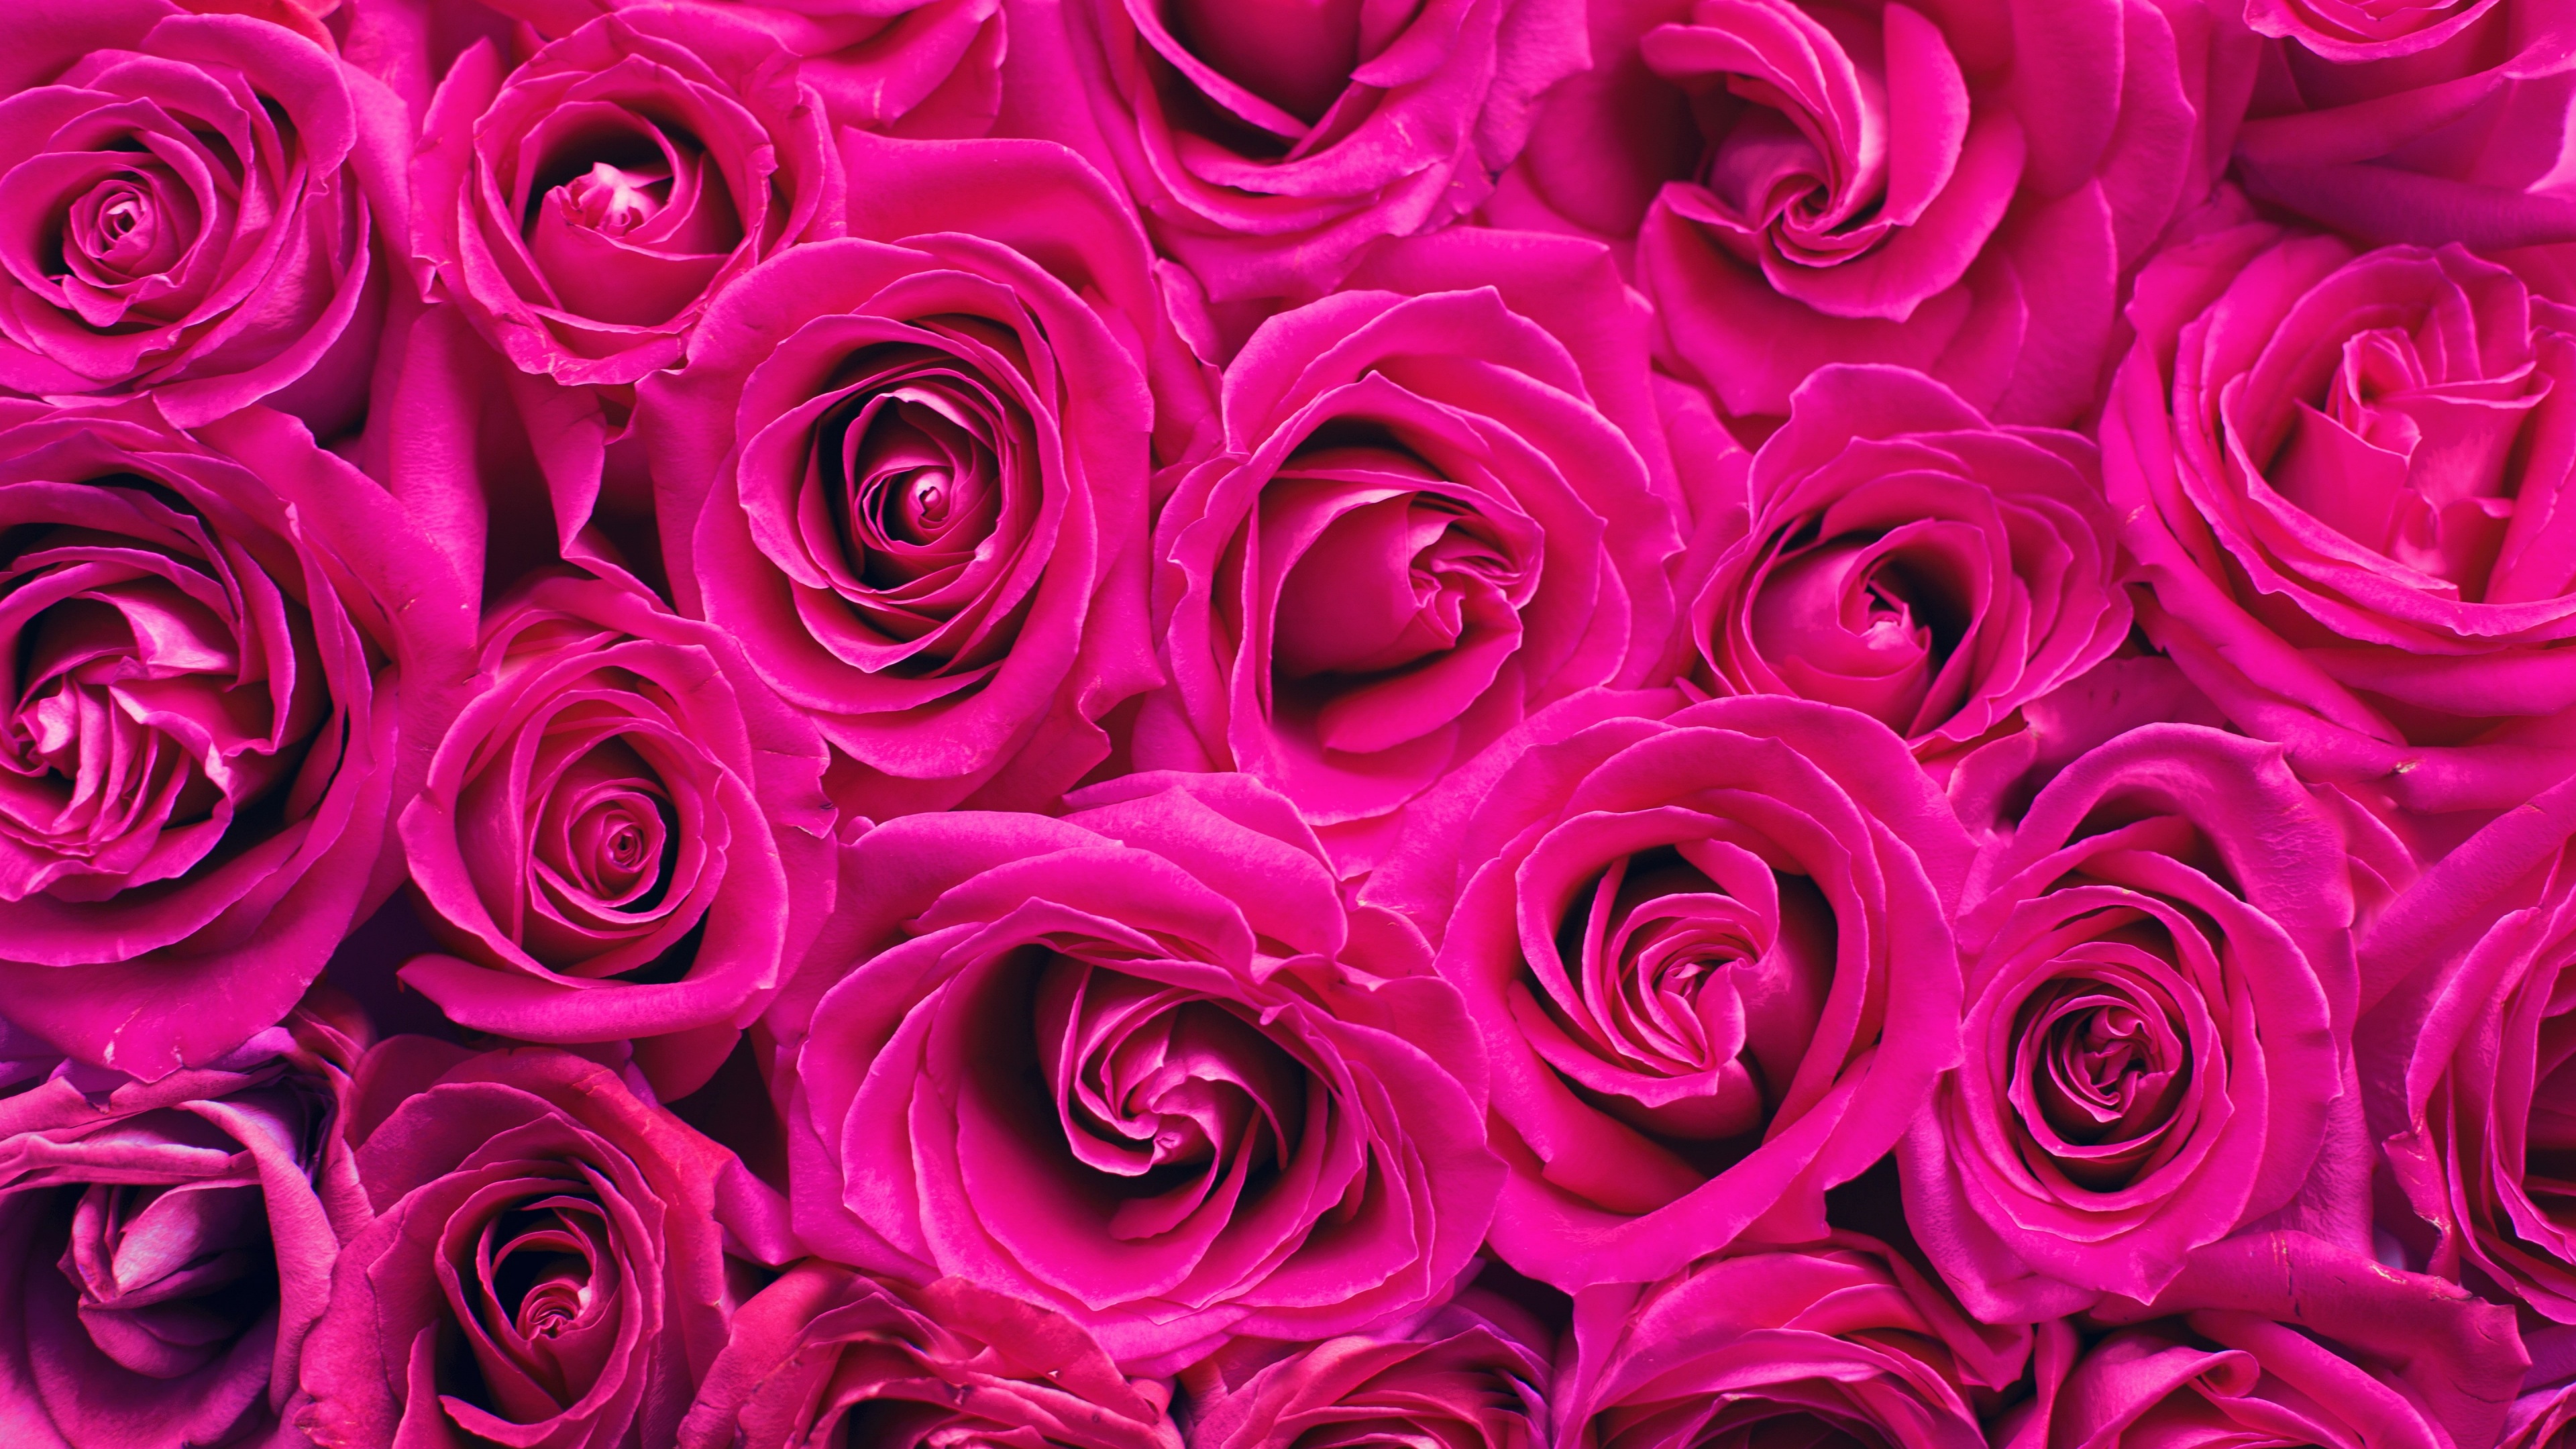 Hãy khám phá hình nền hoa hồng hồng 4K với chất lượng tuyệt vời, đem đến một trải nghiệm trực quan với màu sắc tươi sáng và tinh tế của những cánh hoa nở rộ. Nền hoa hồng thật tuyệt vời cho máy tính của bạn, đồng thời thể hiện sự lãng mạn và tinh tế của bạn!